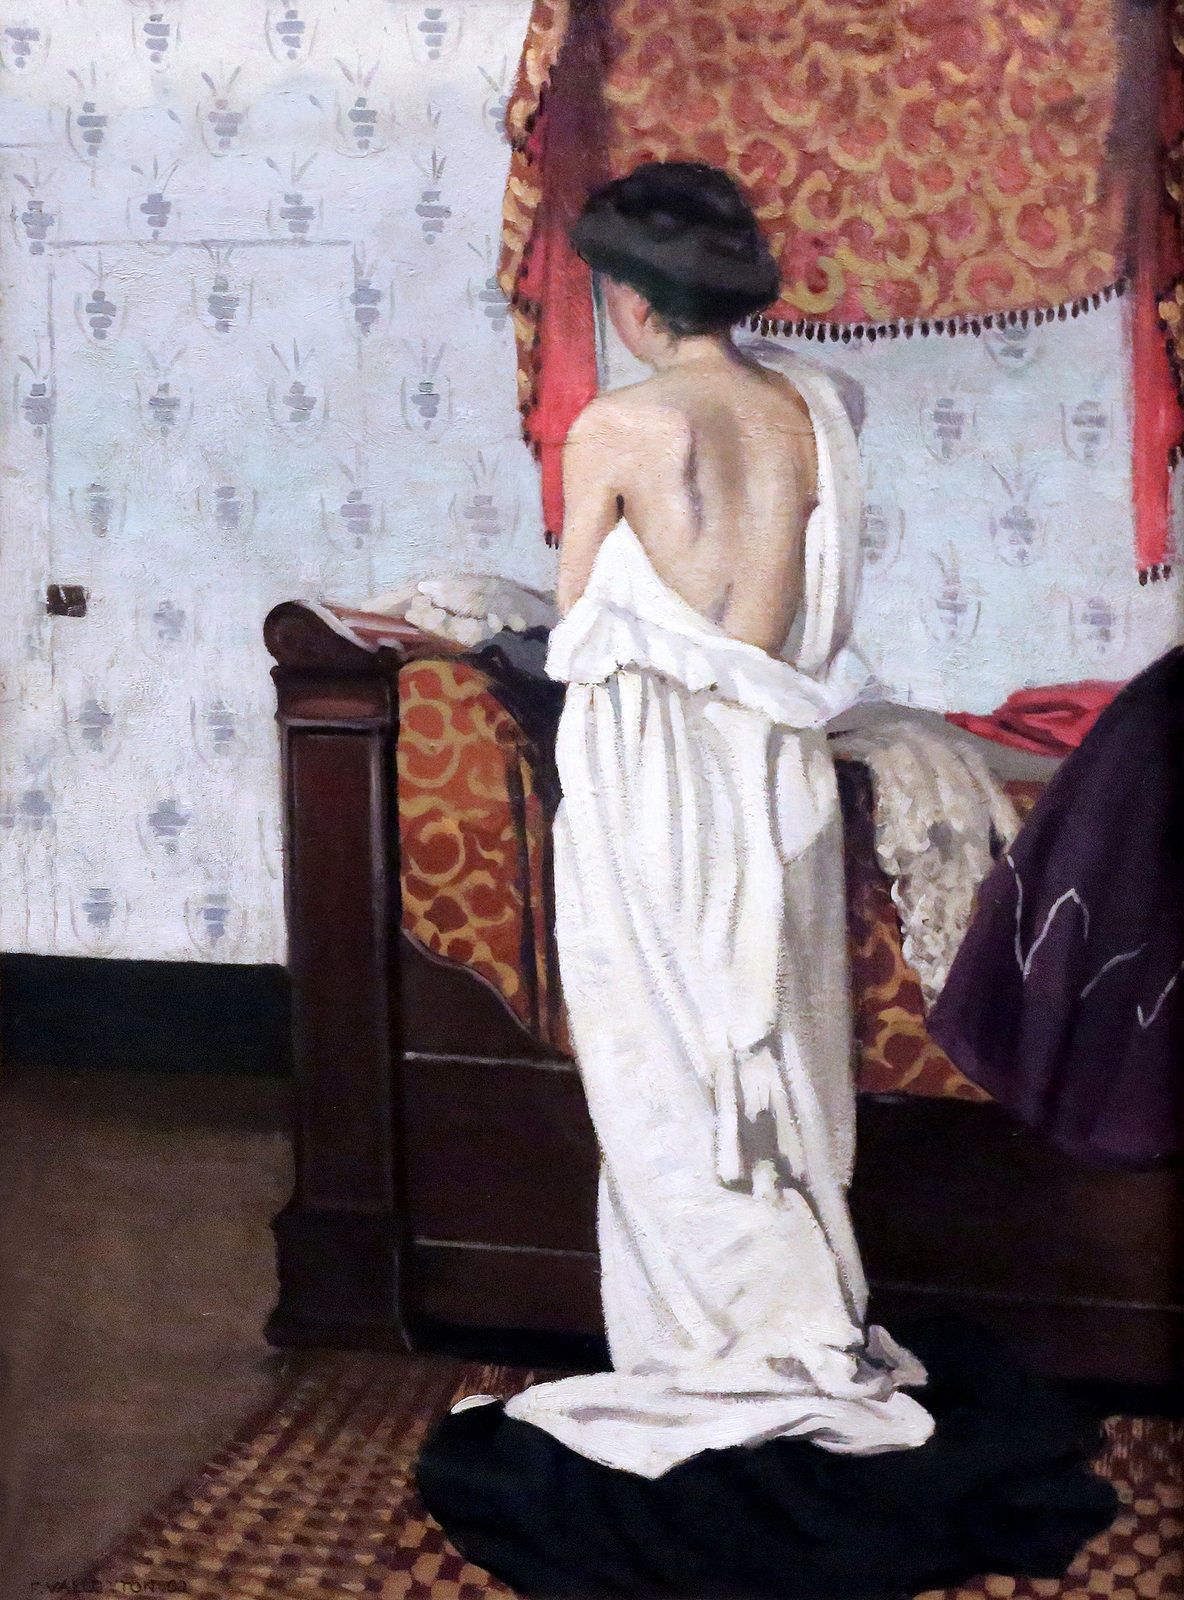 Innen, Akt von hinten gesehen by Félix Vallotton - 1902 - 76.5 x 57.0 cm Kunsthalle Bremen